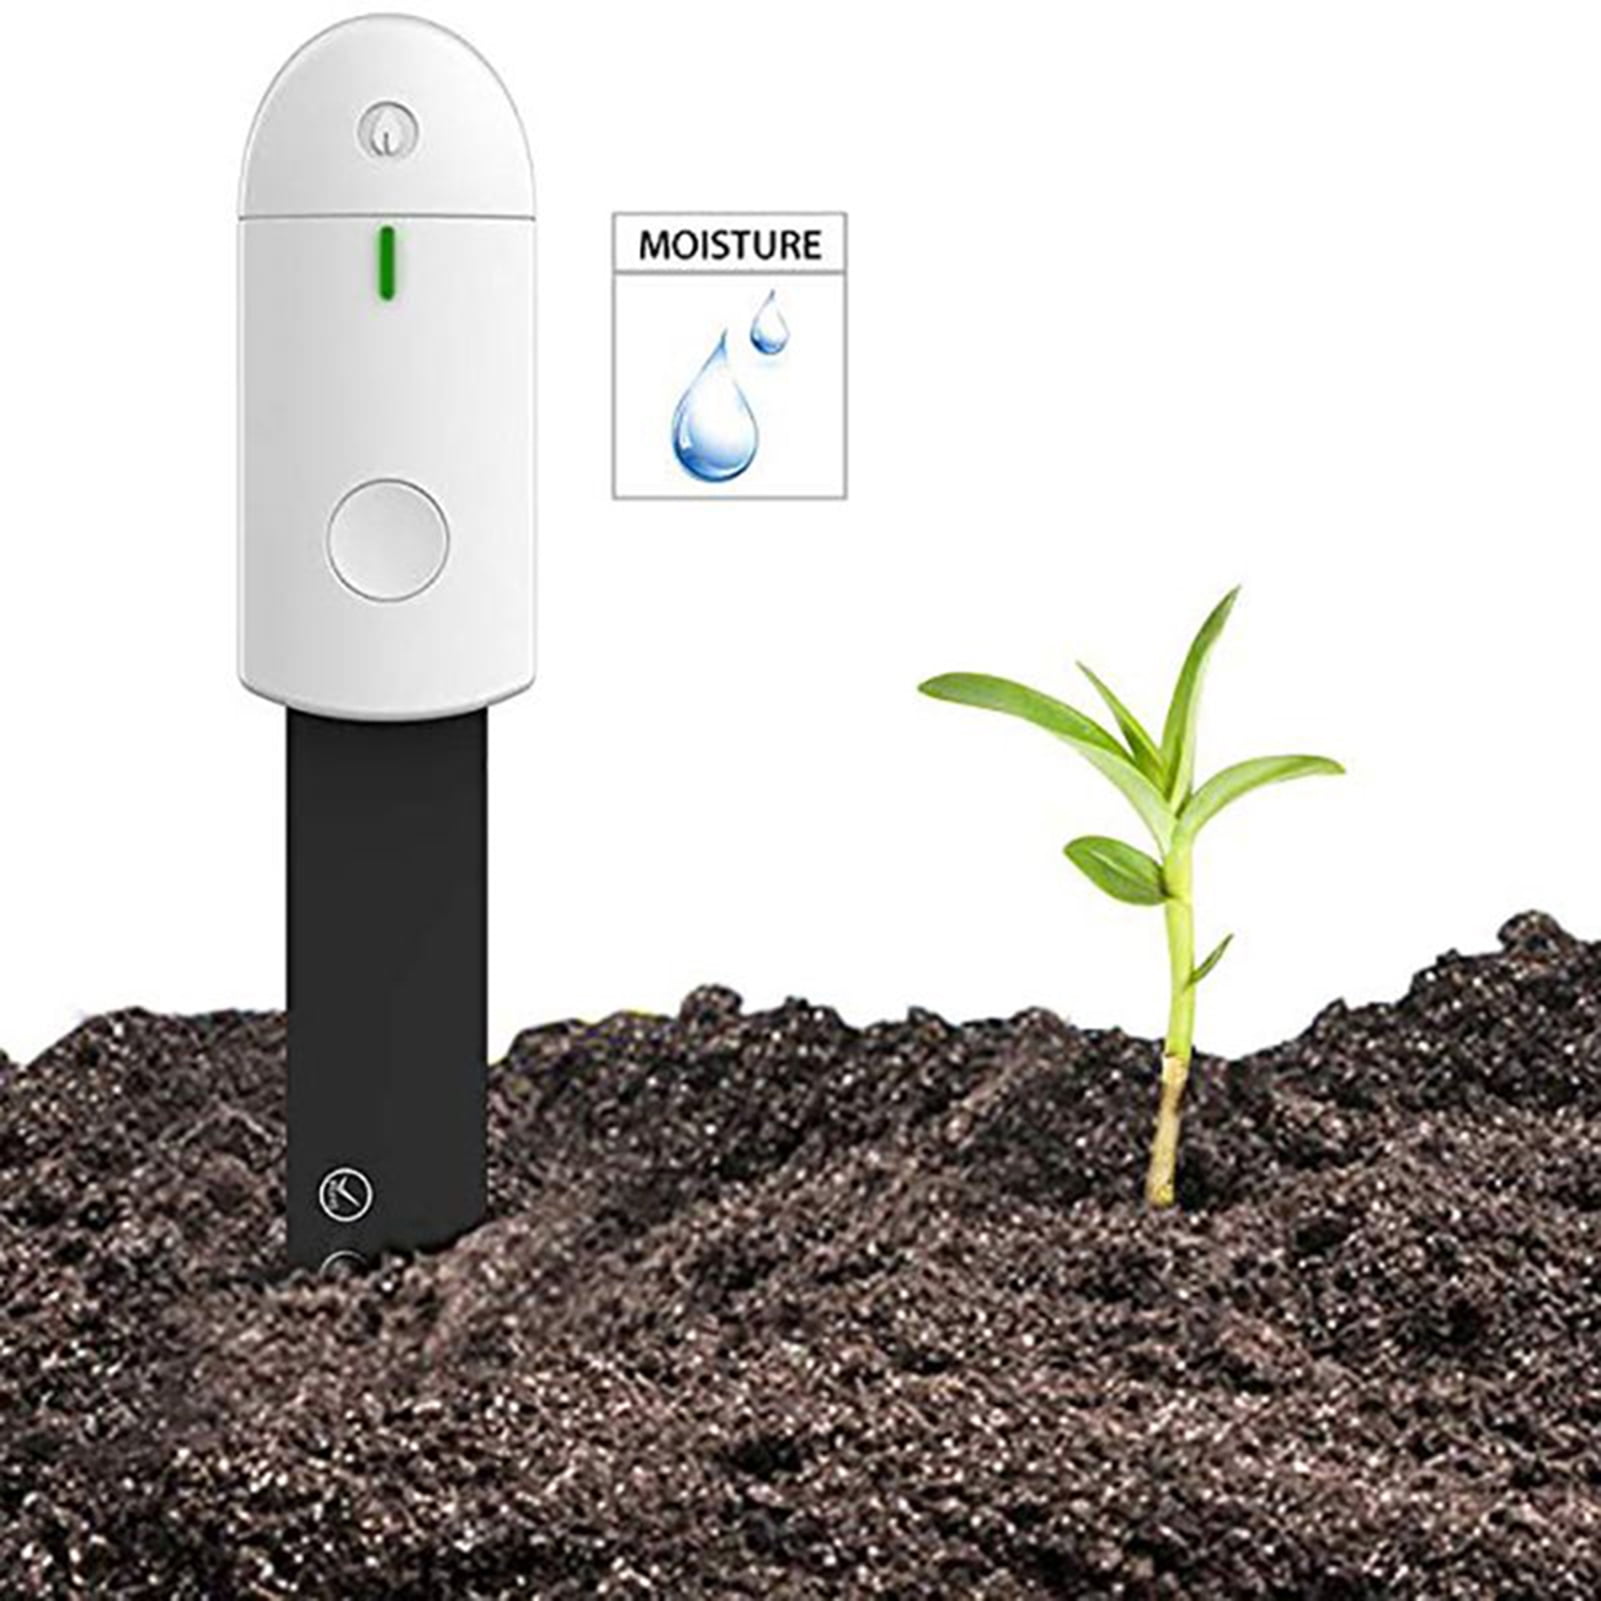 Hygrometer Moisture Sensor Soil Tester No Battery Needed 2pcs Soil Moisture Sensor Meter with 3pcs Gardening Tools for Garden Farm Soil Moisture Meter Kit Plant Water Meter Indoor & Outdoor